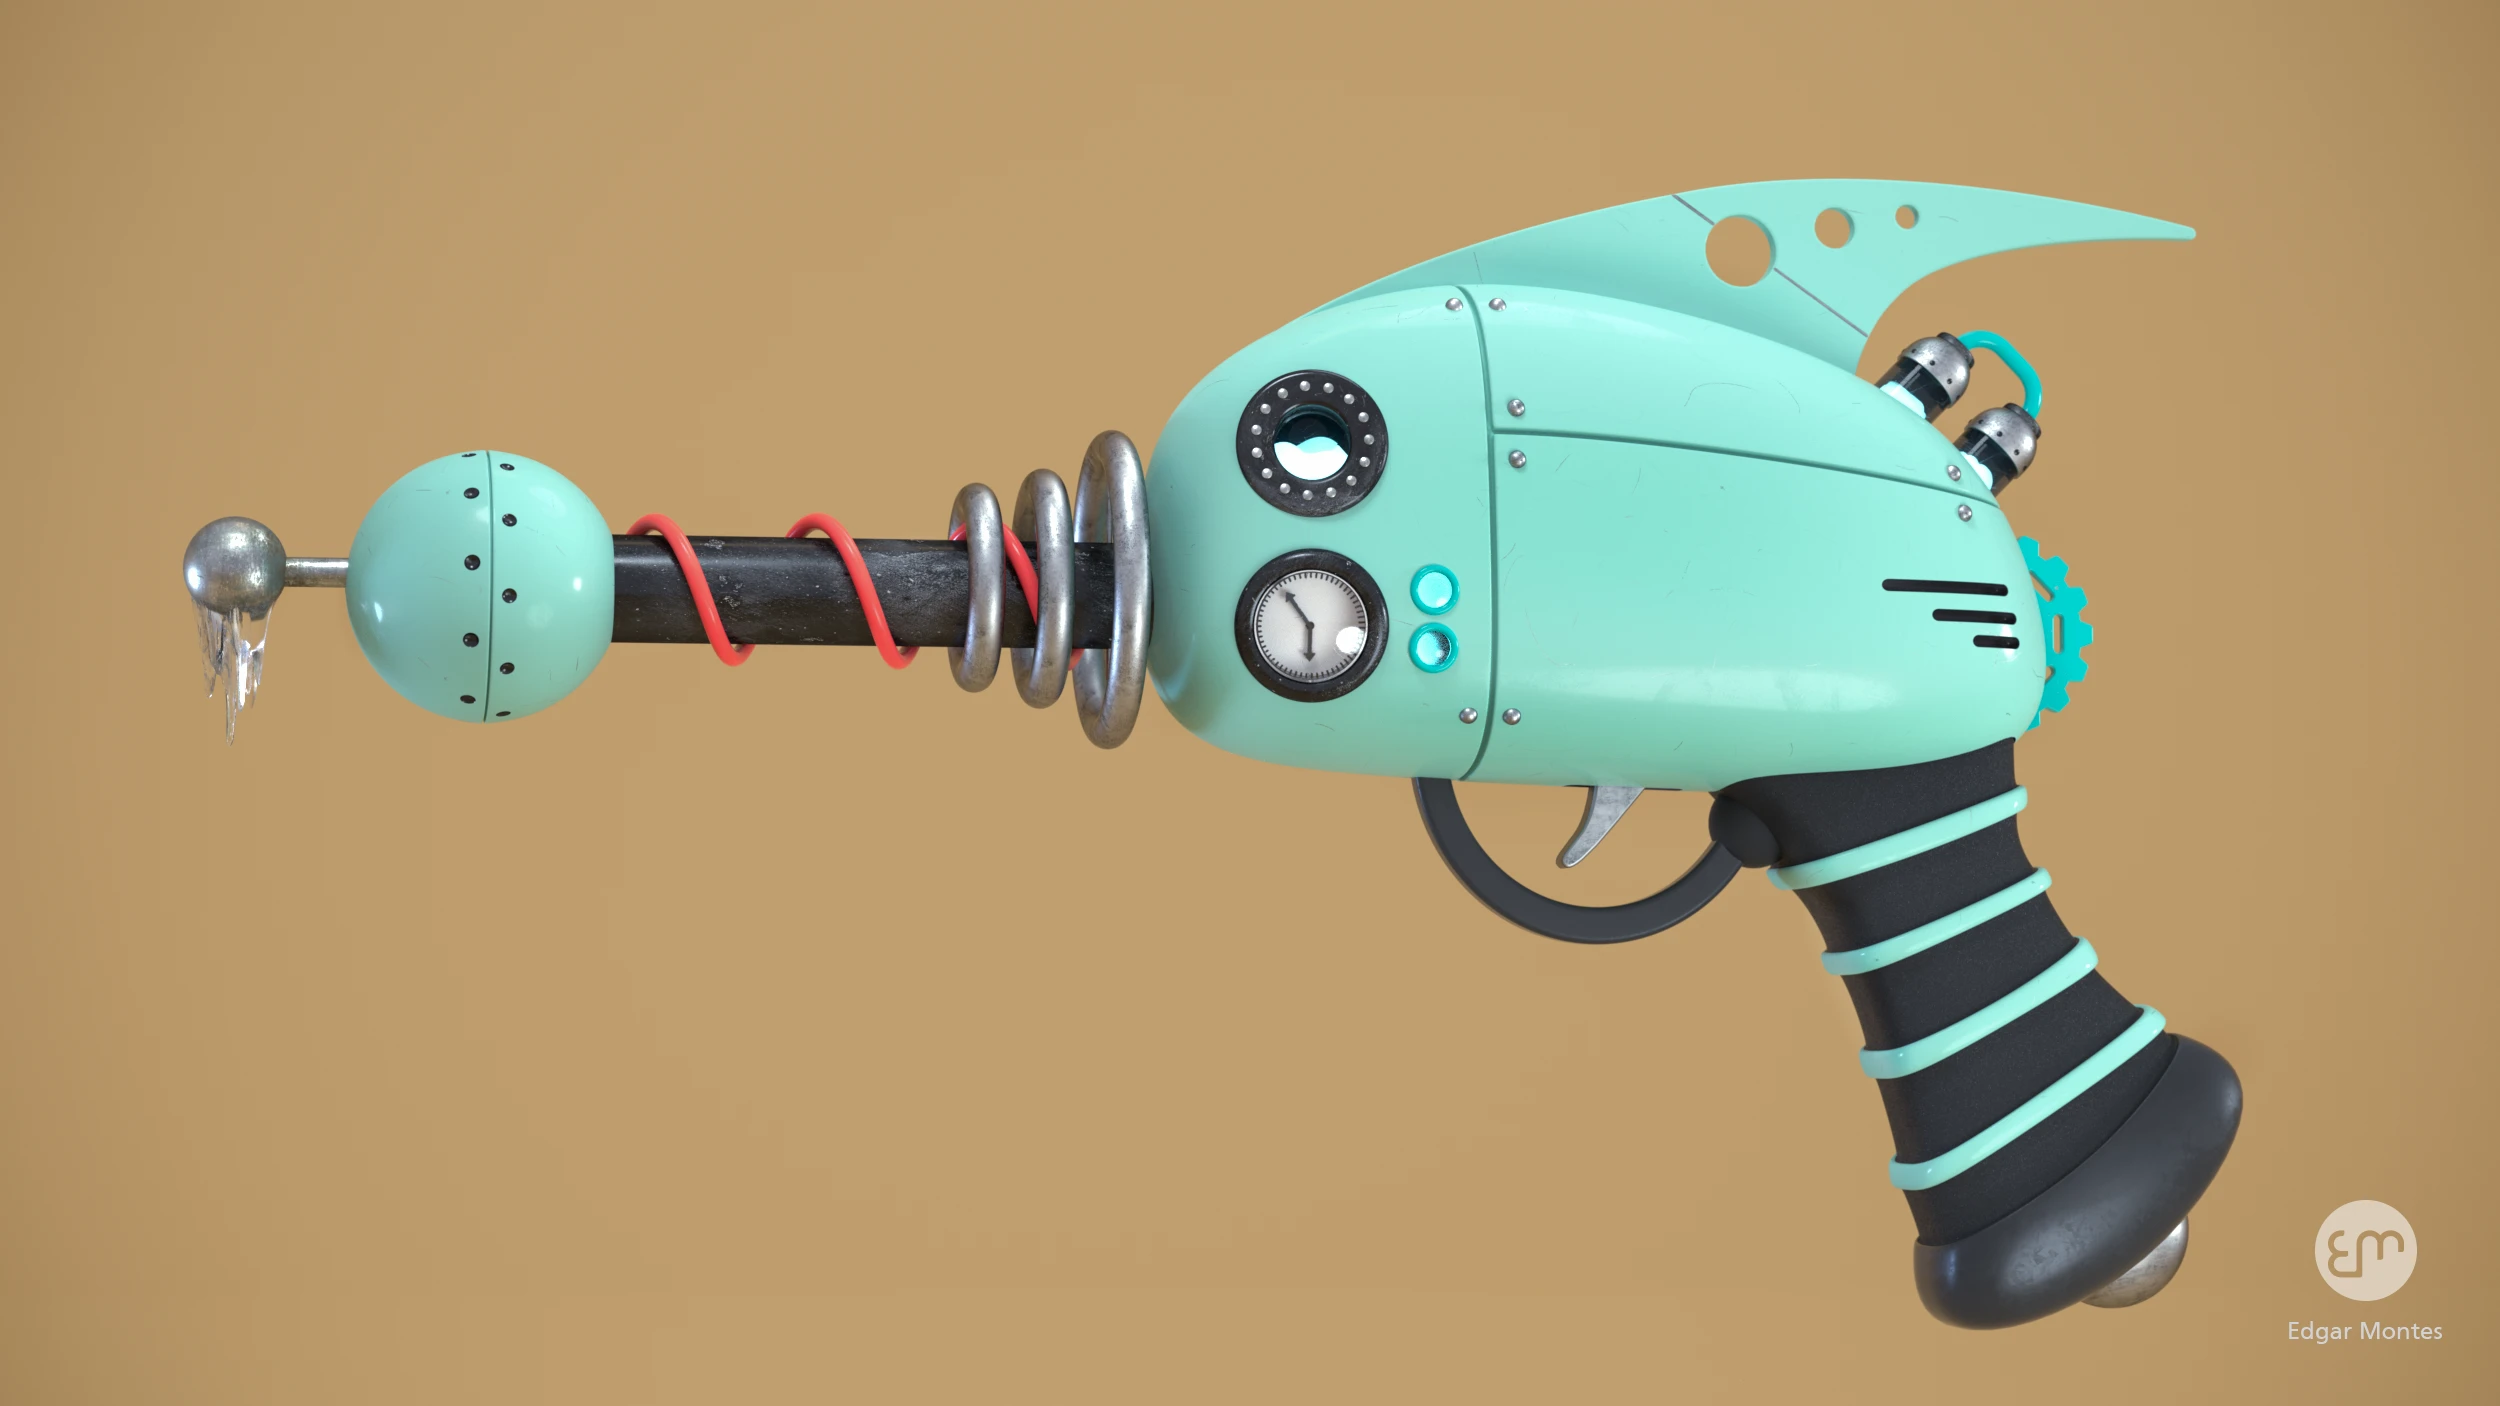 Atomic freeze ray gun design by Edgar Montes.